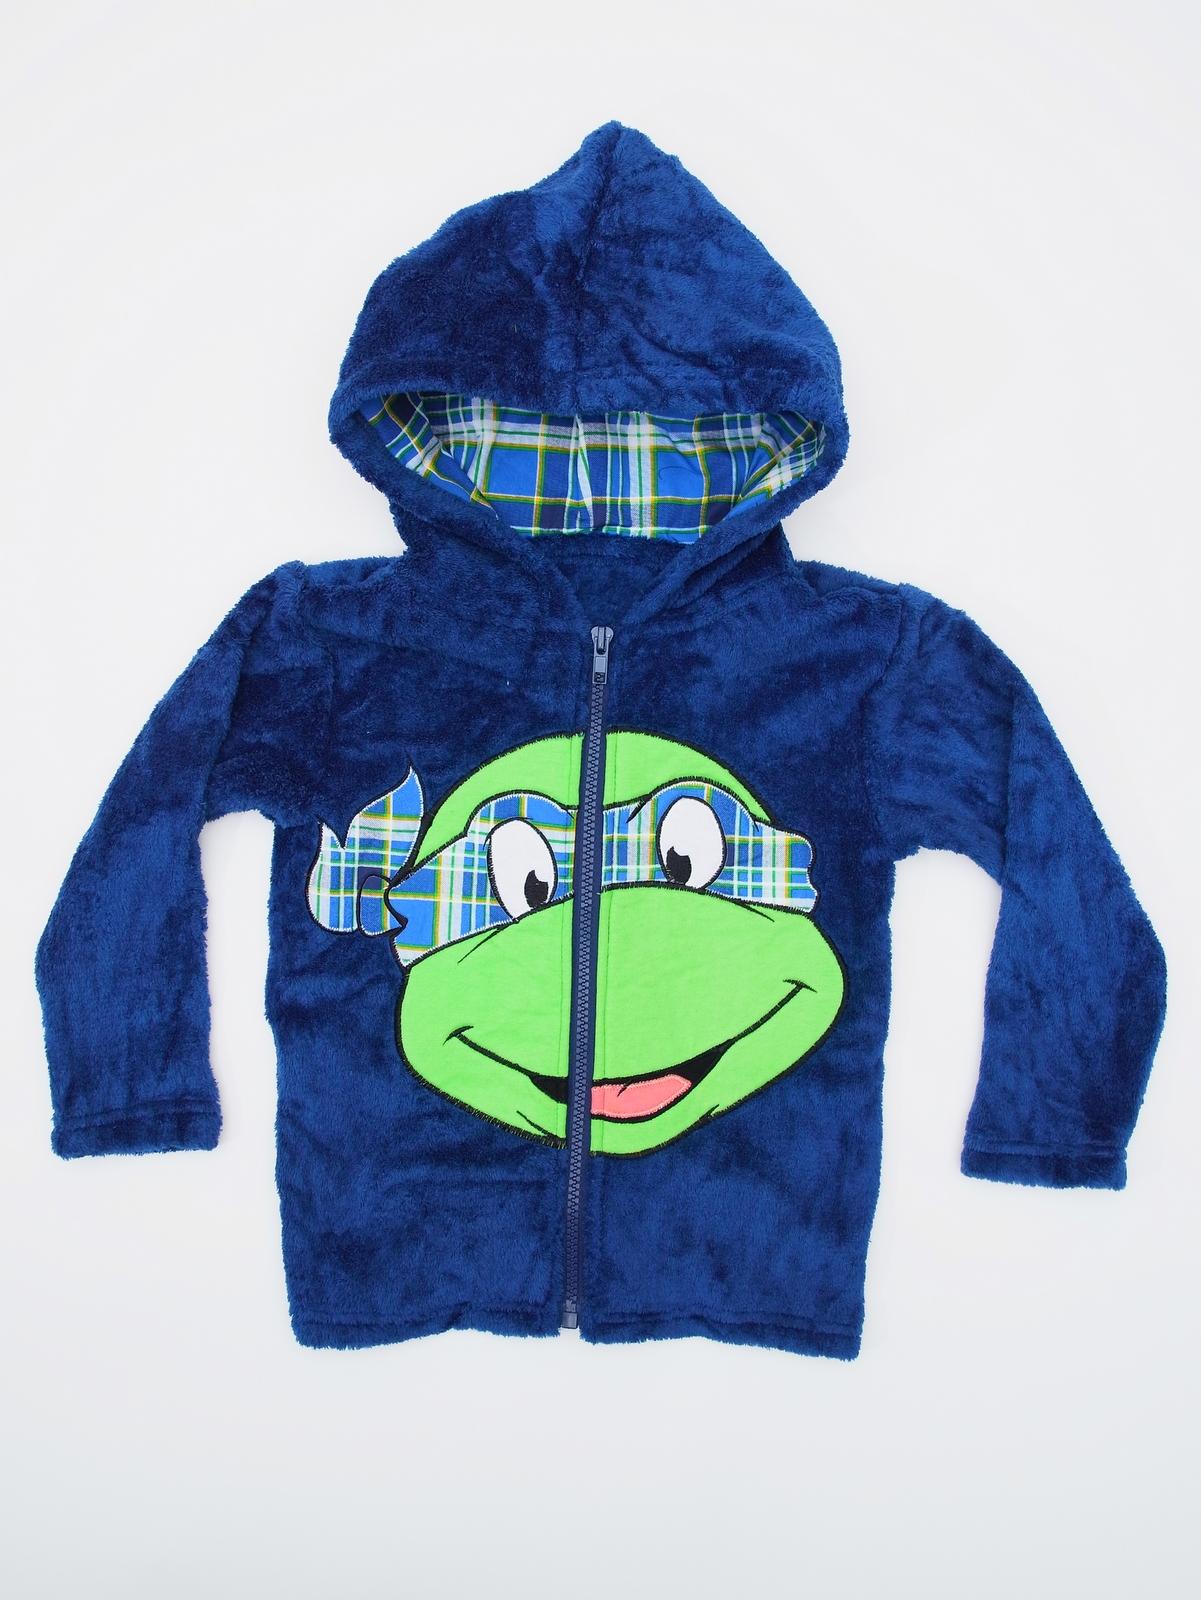 Nickelodeon Toddler Boy's Hoodie Jacket - Teenage Mutant Ninja Turtles